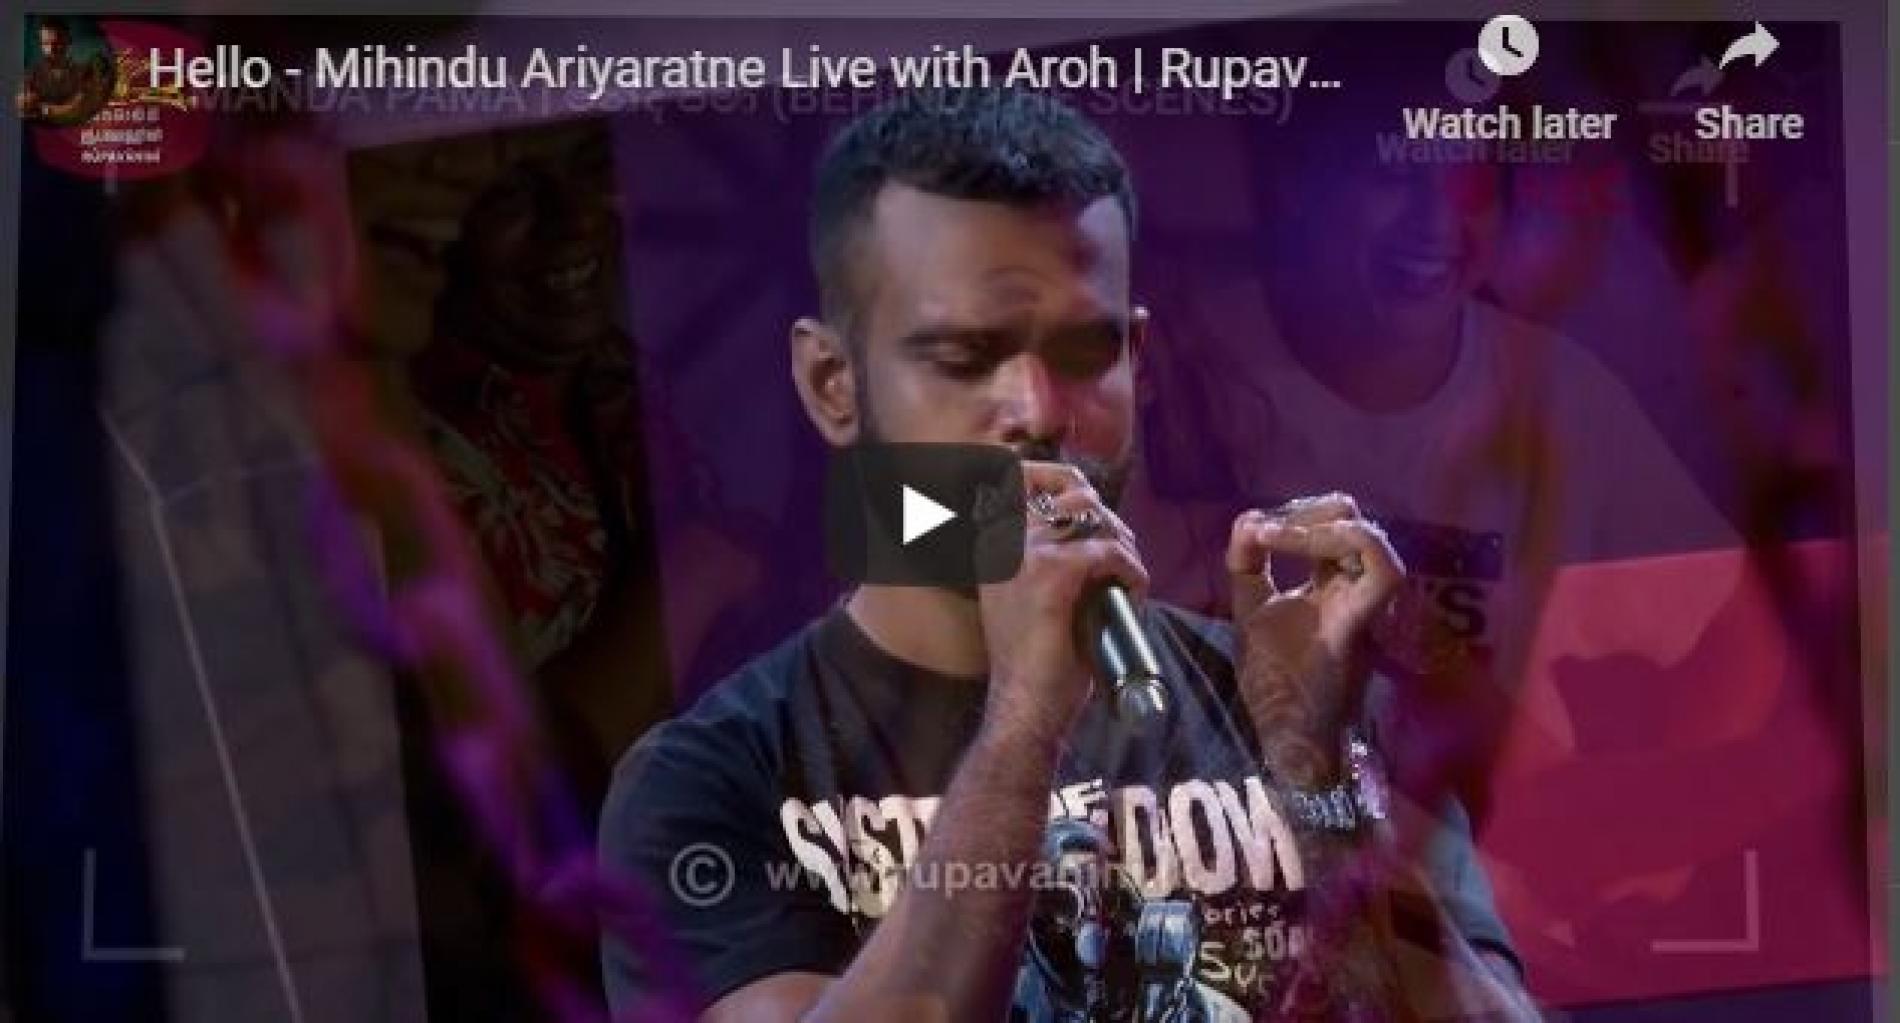 New Music : Hello – Mihindu Ariyaratne Live with Aroh | Rupavahini